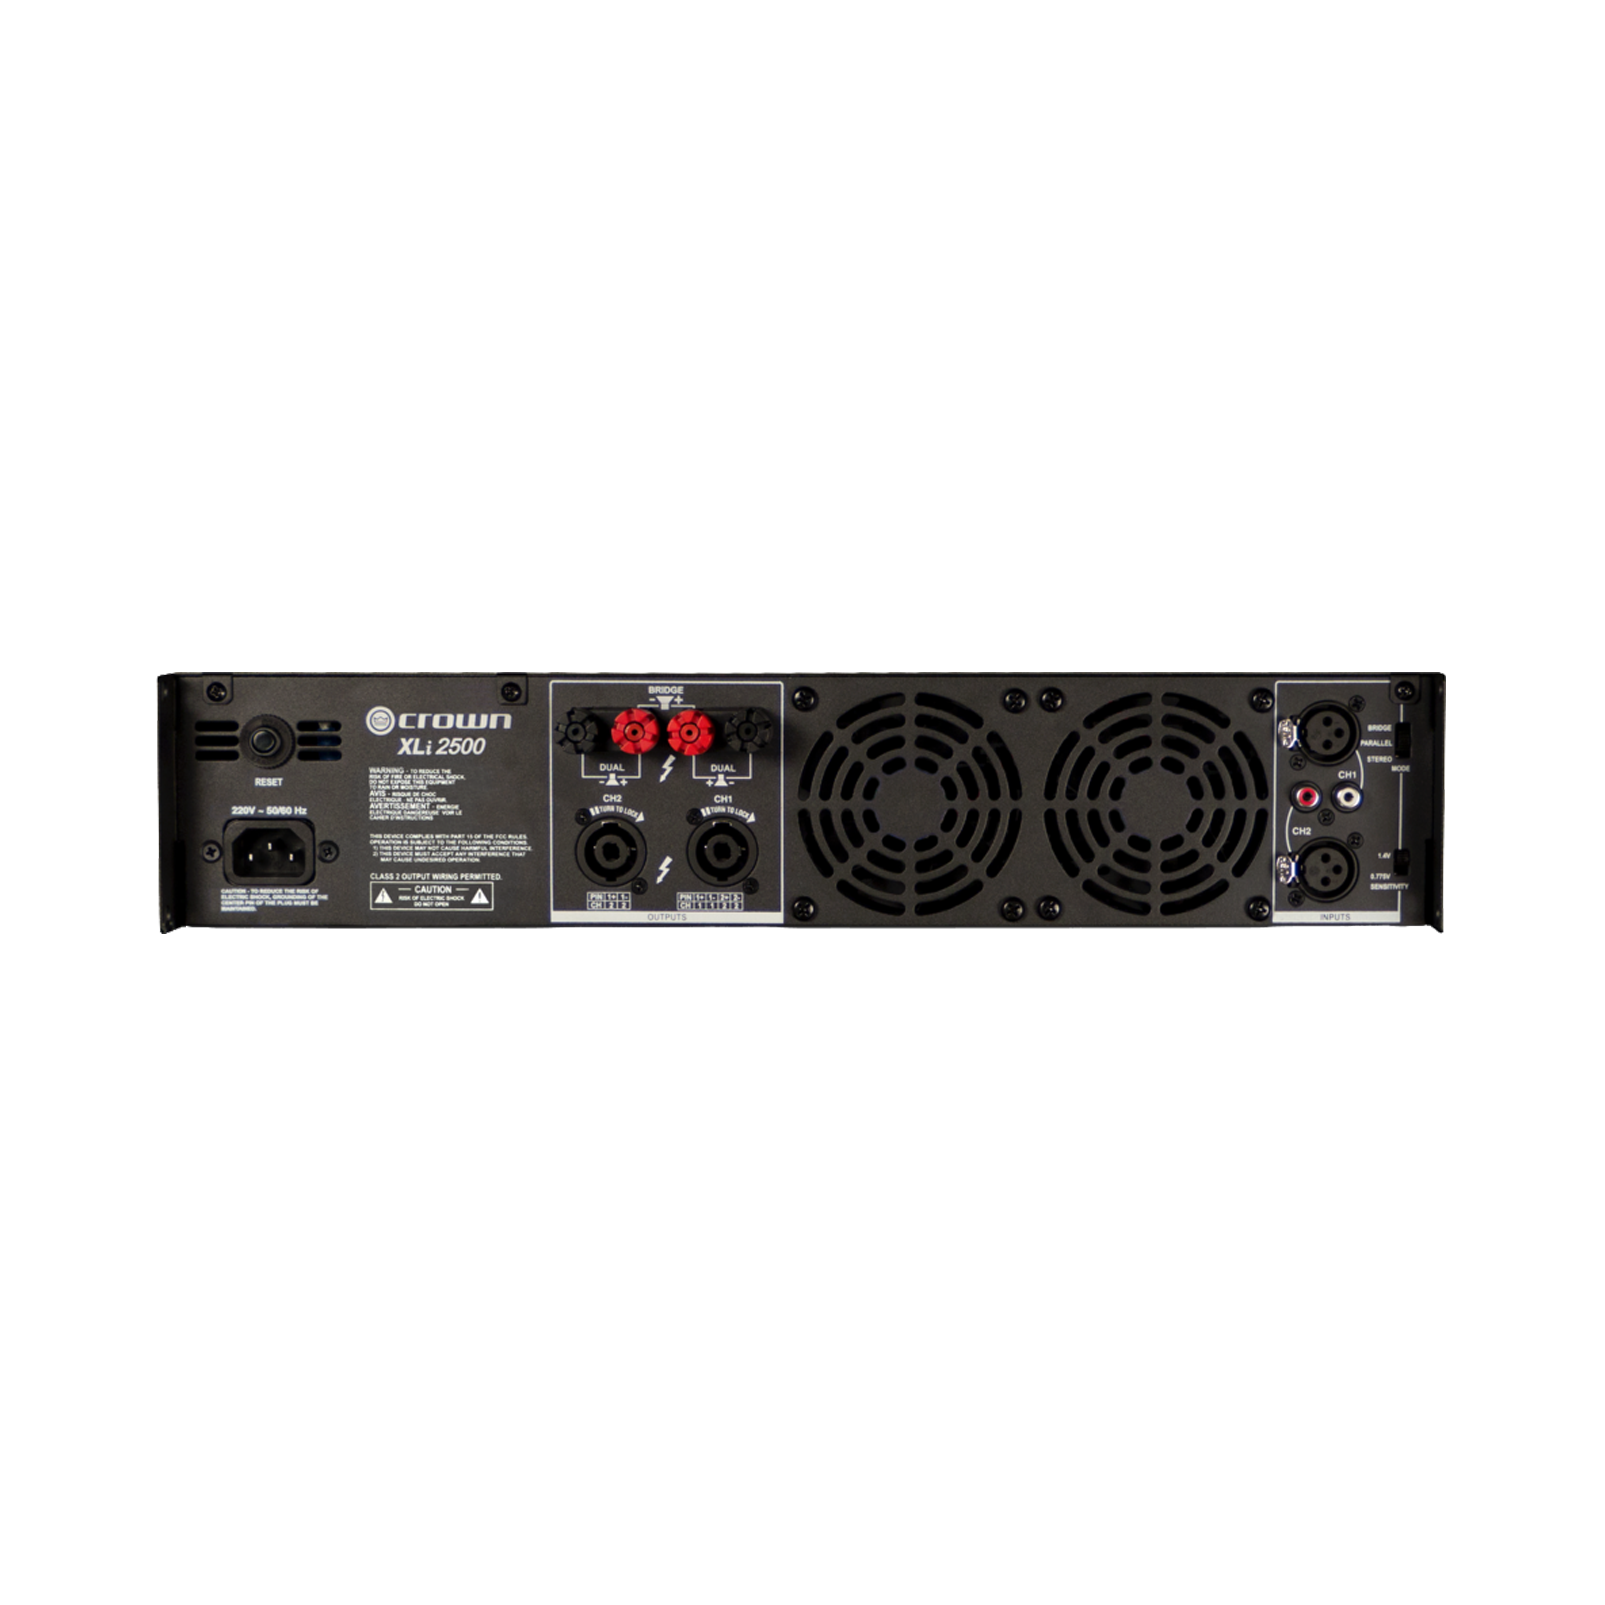 XLi 2500 - Grey - Two-channel, 750W @ 4Ω power amplifier - Back